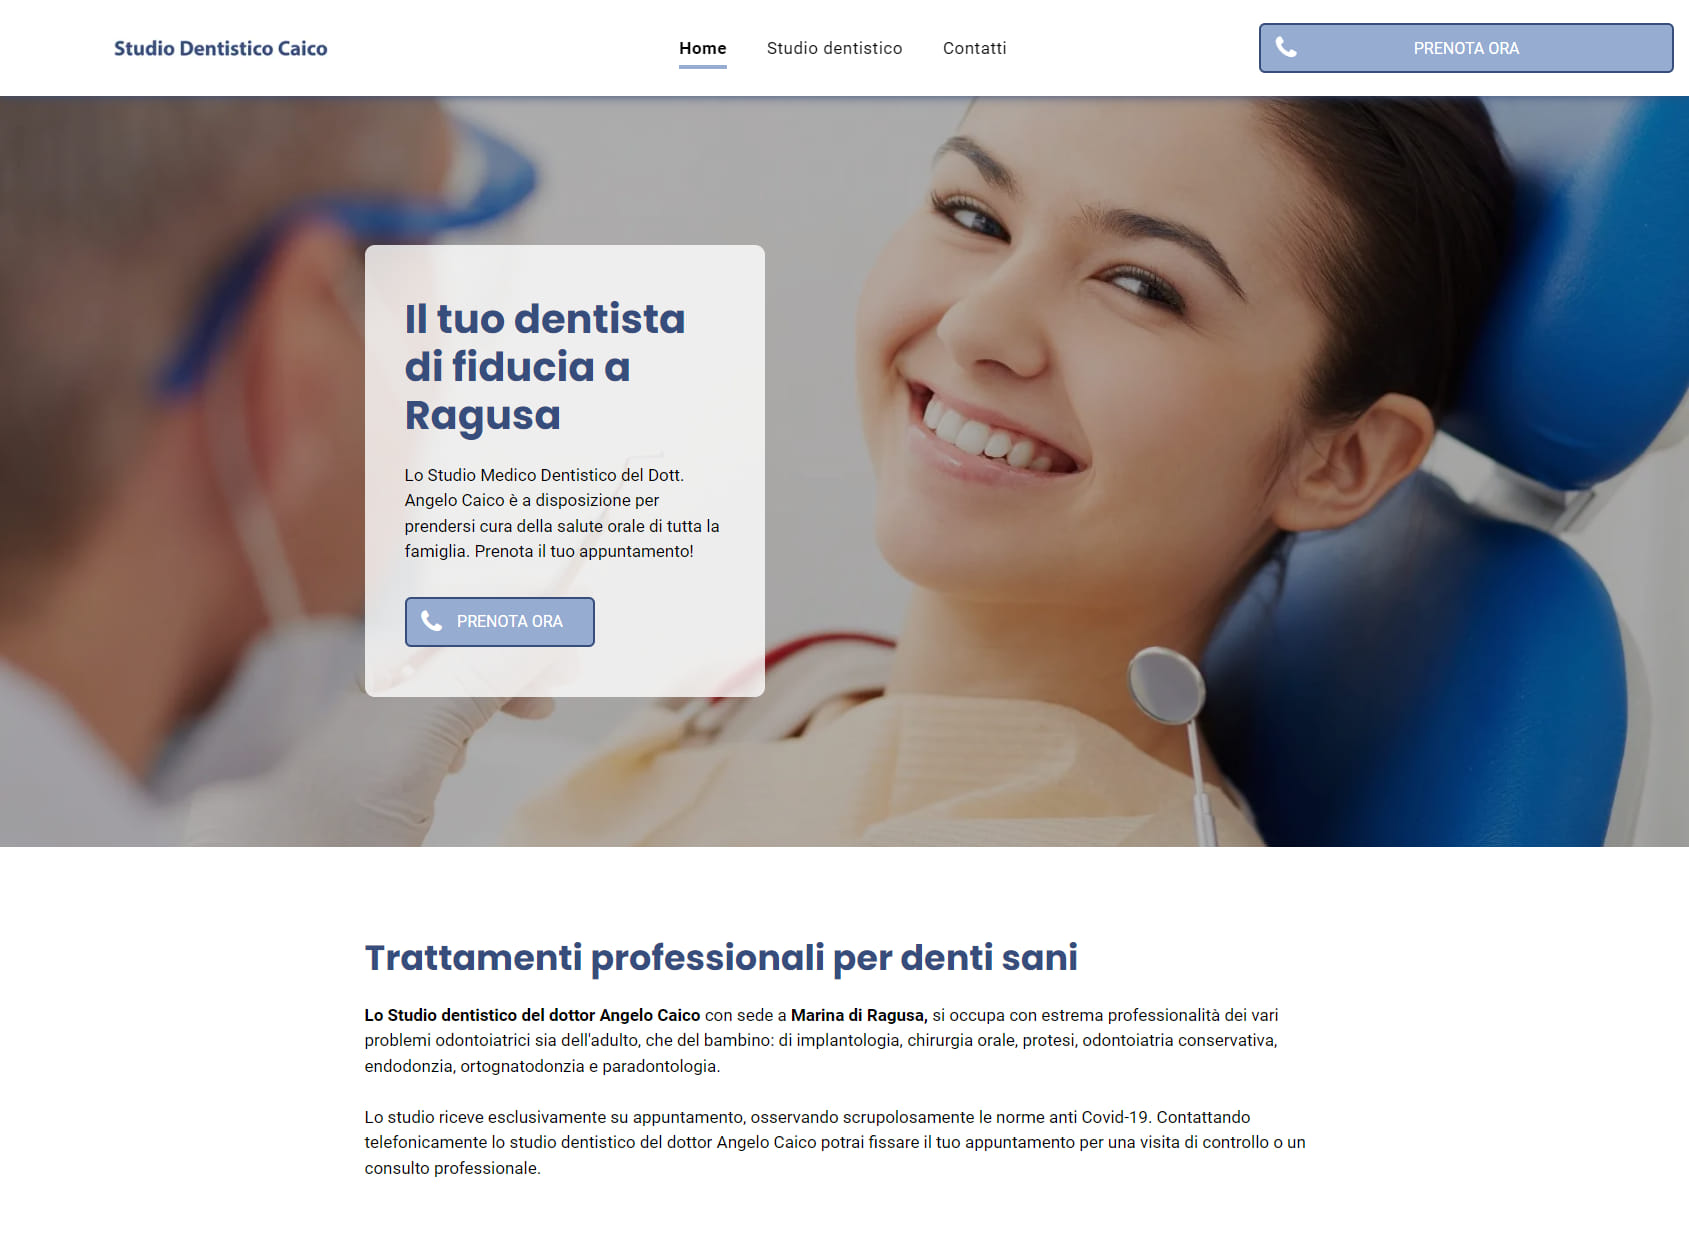 Dentista Ragusa Caico Dr. Angelo studio dentistico